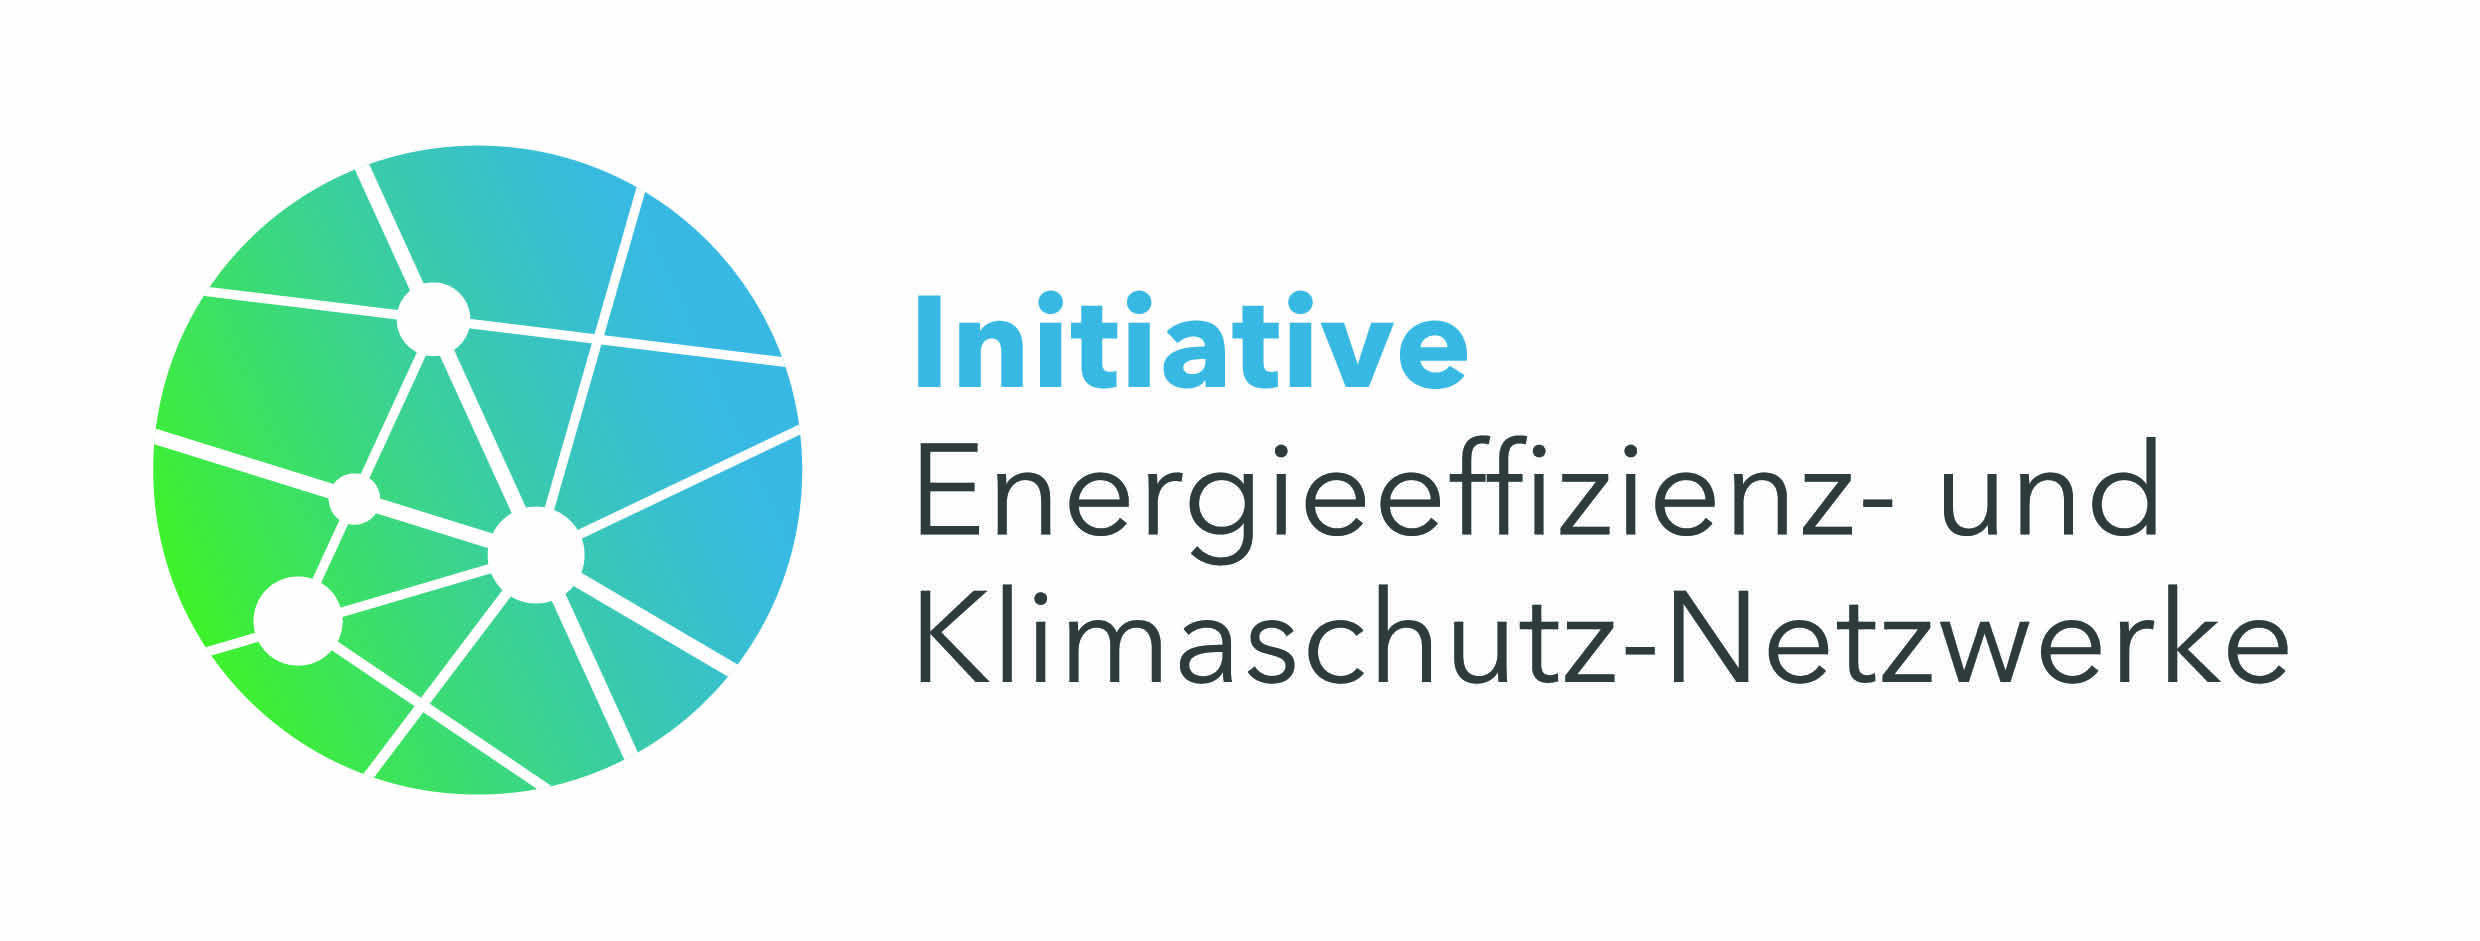 Initiative Energieeffizienz- und Klimaschutznetzwerke